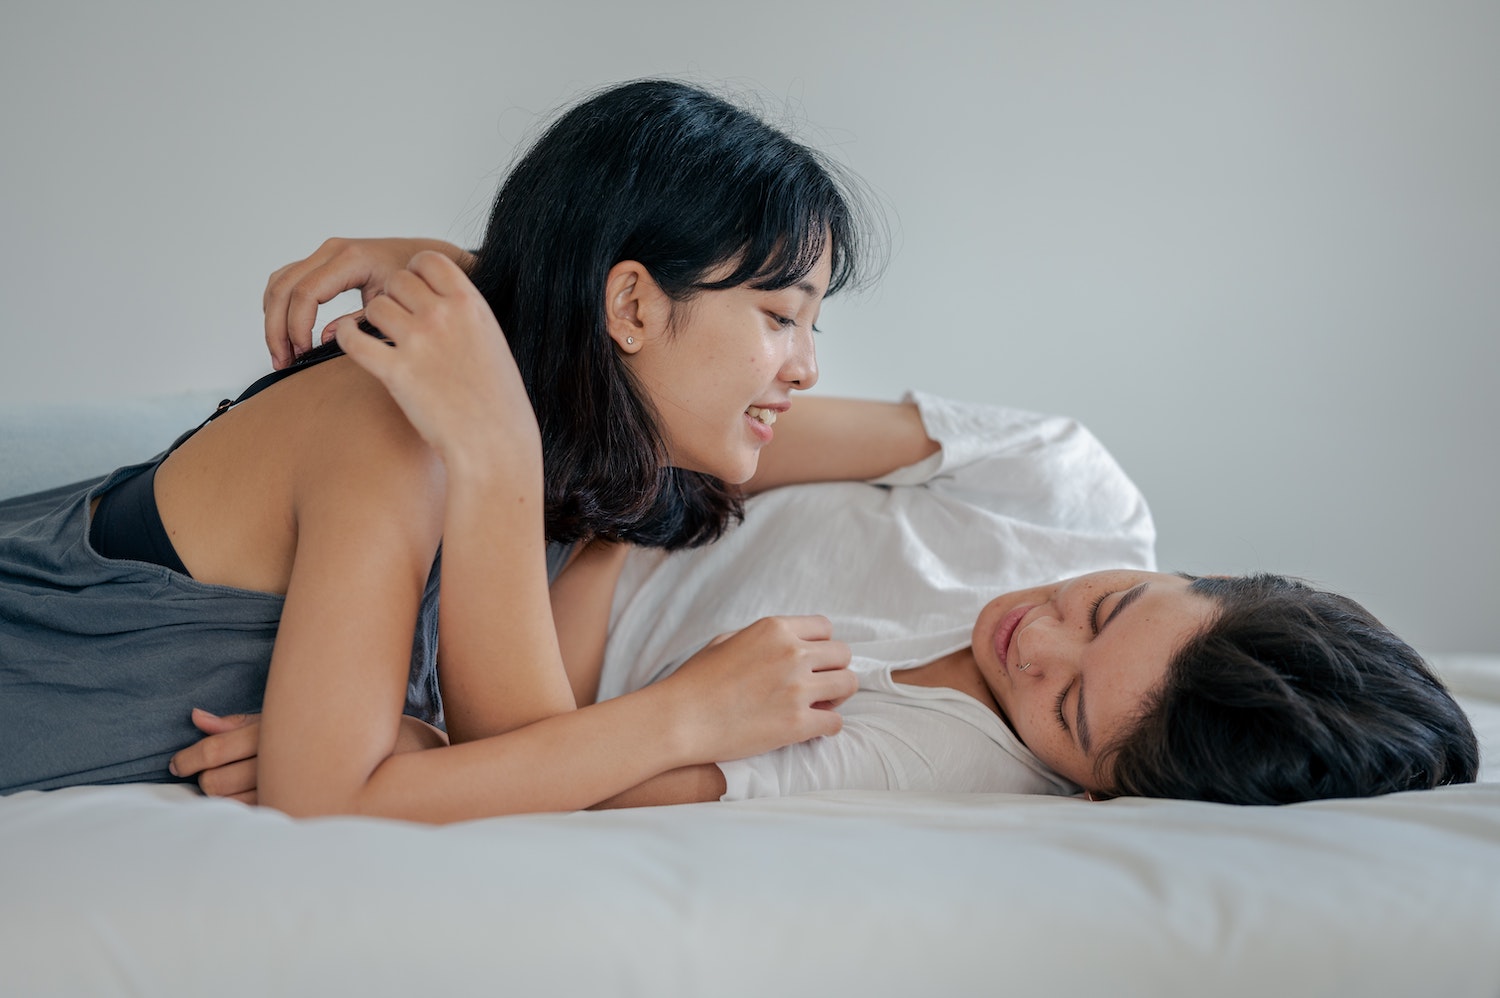 Giochi Erotici: Giochi Sessuali, Pratiche e Cose Strane da Fare a Letto (e  Non Solo) 